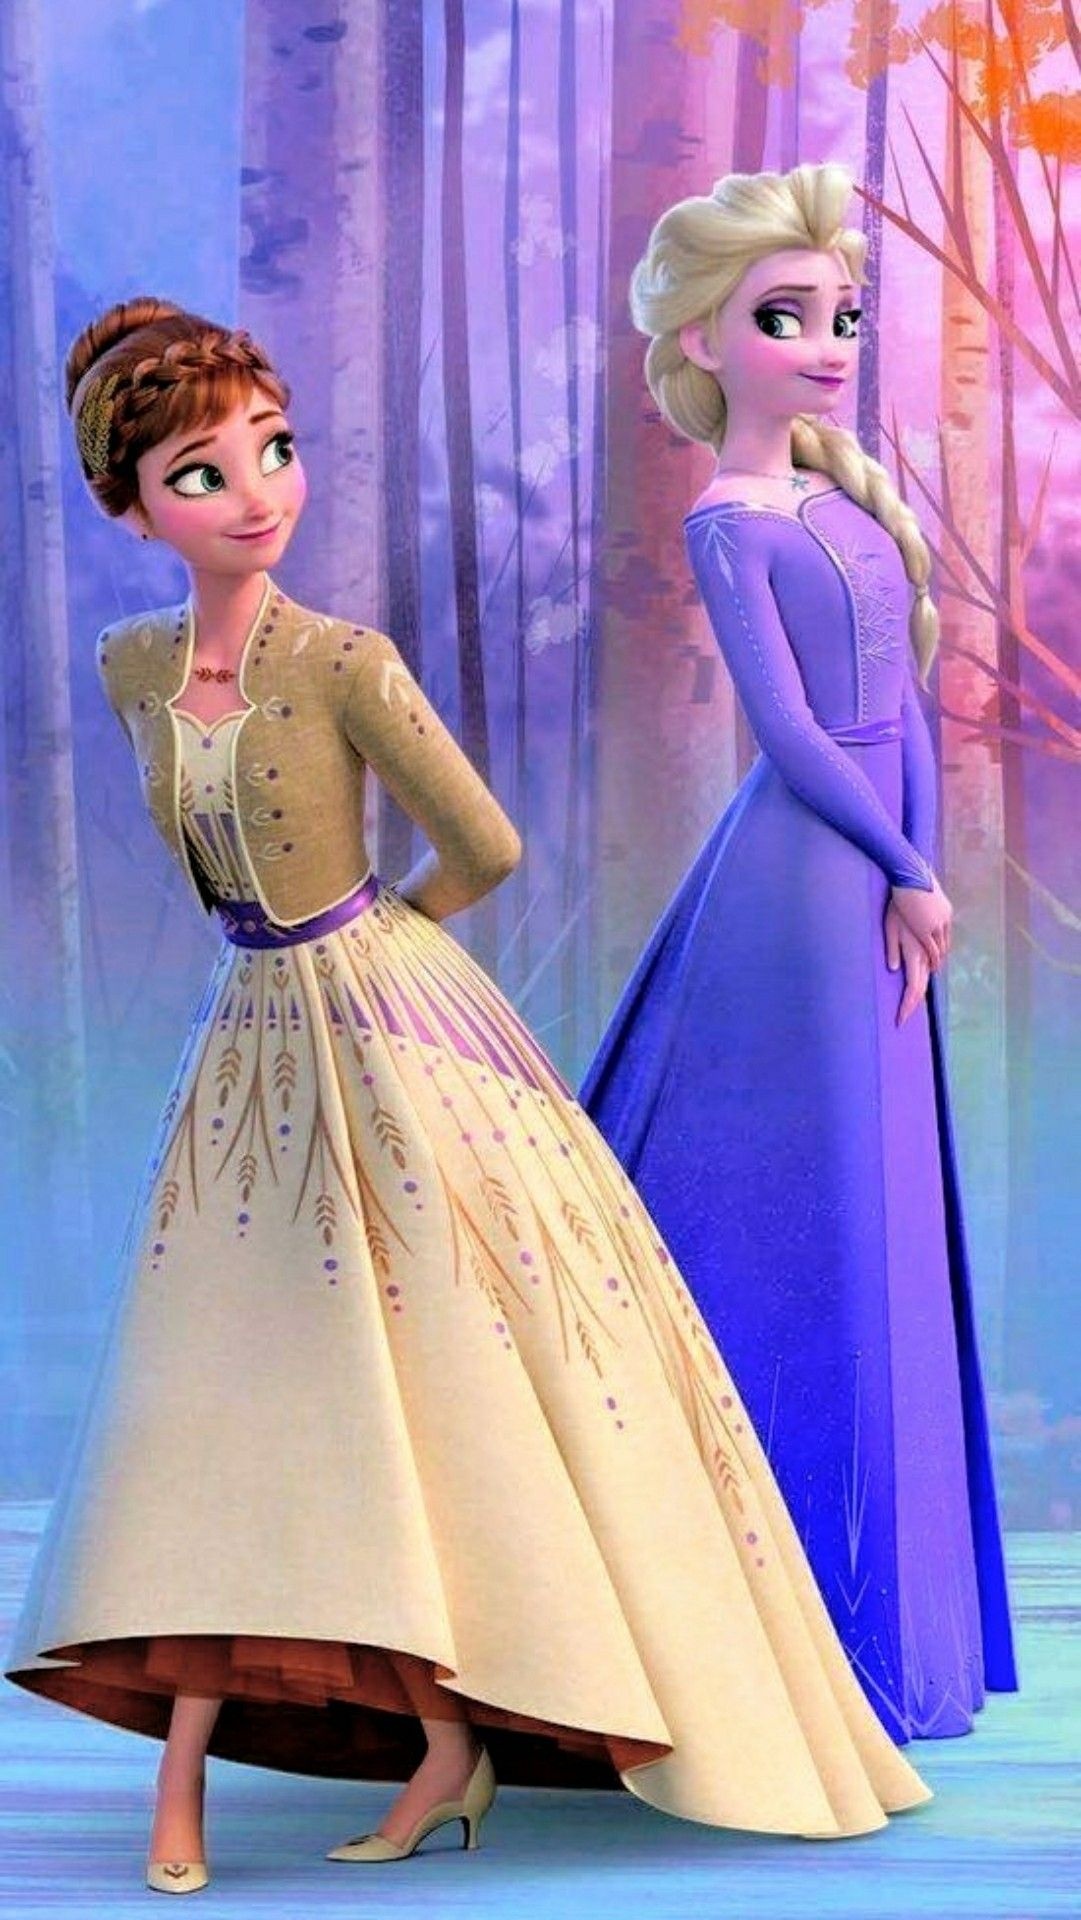 Queen Anna, Frozen Animation, Frozen 2 wallpaper, Disney Princess, 1090x1920 HD Phone